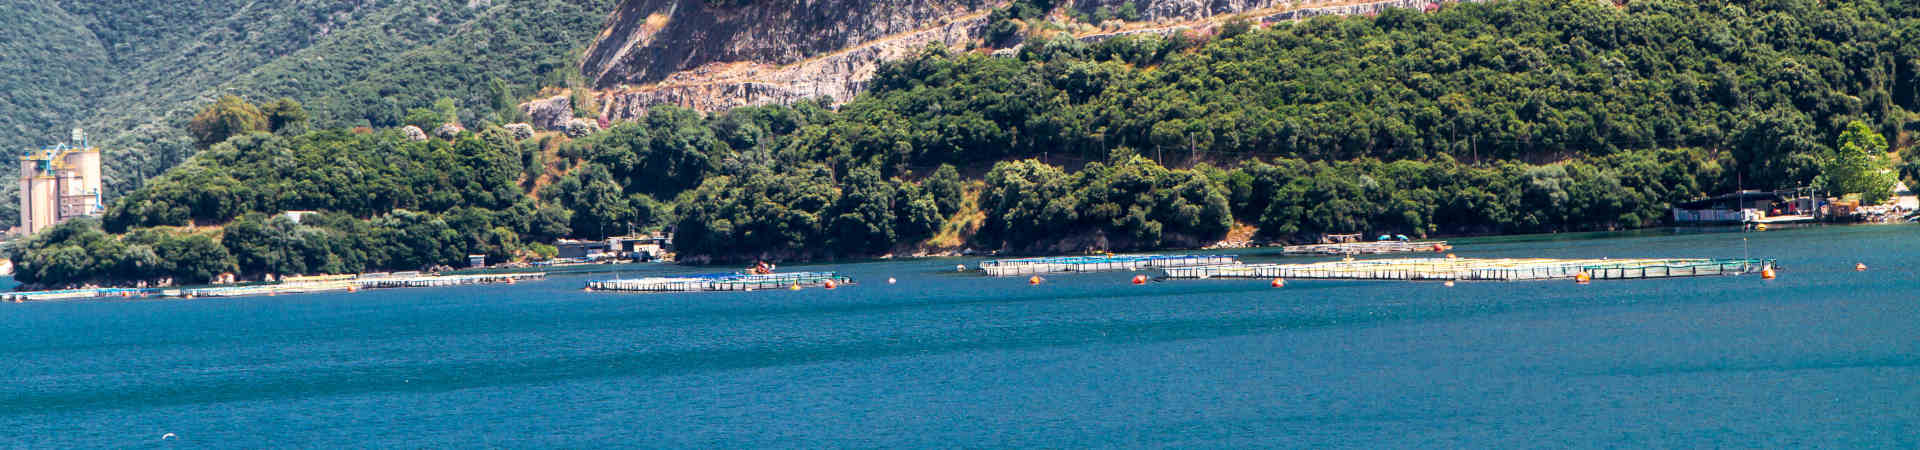 Imatge recurs del port de destinació Igoumenitsa per a la ruta en ferry Bríndisi - Igoumenitsa